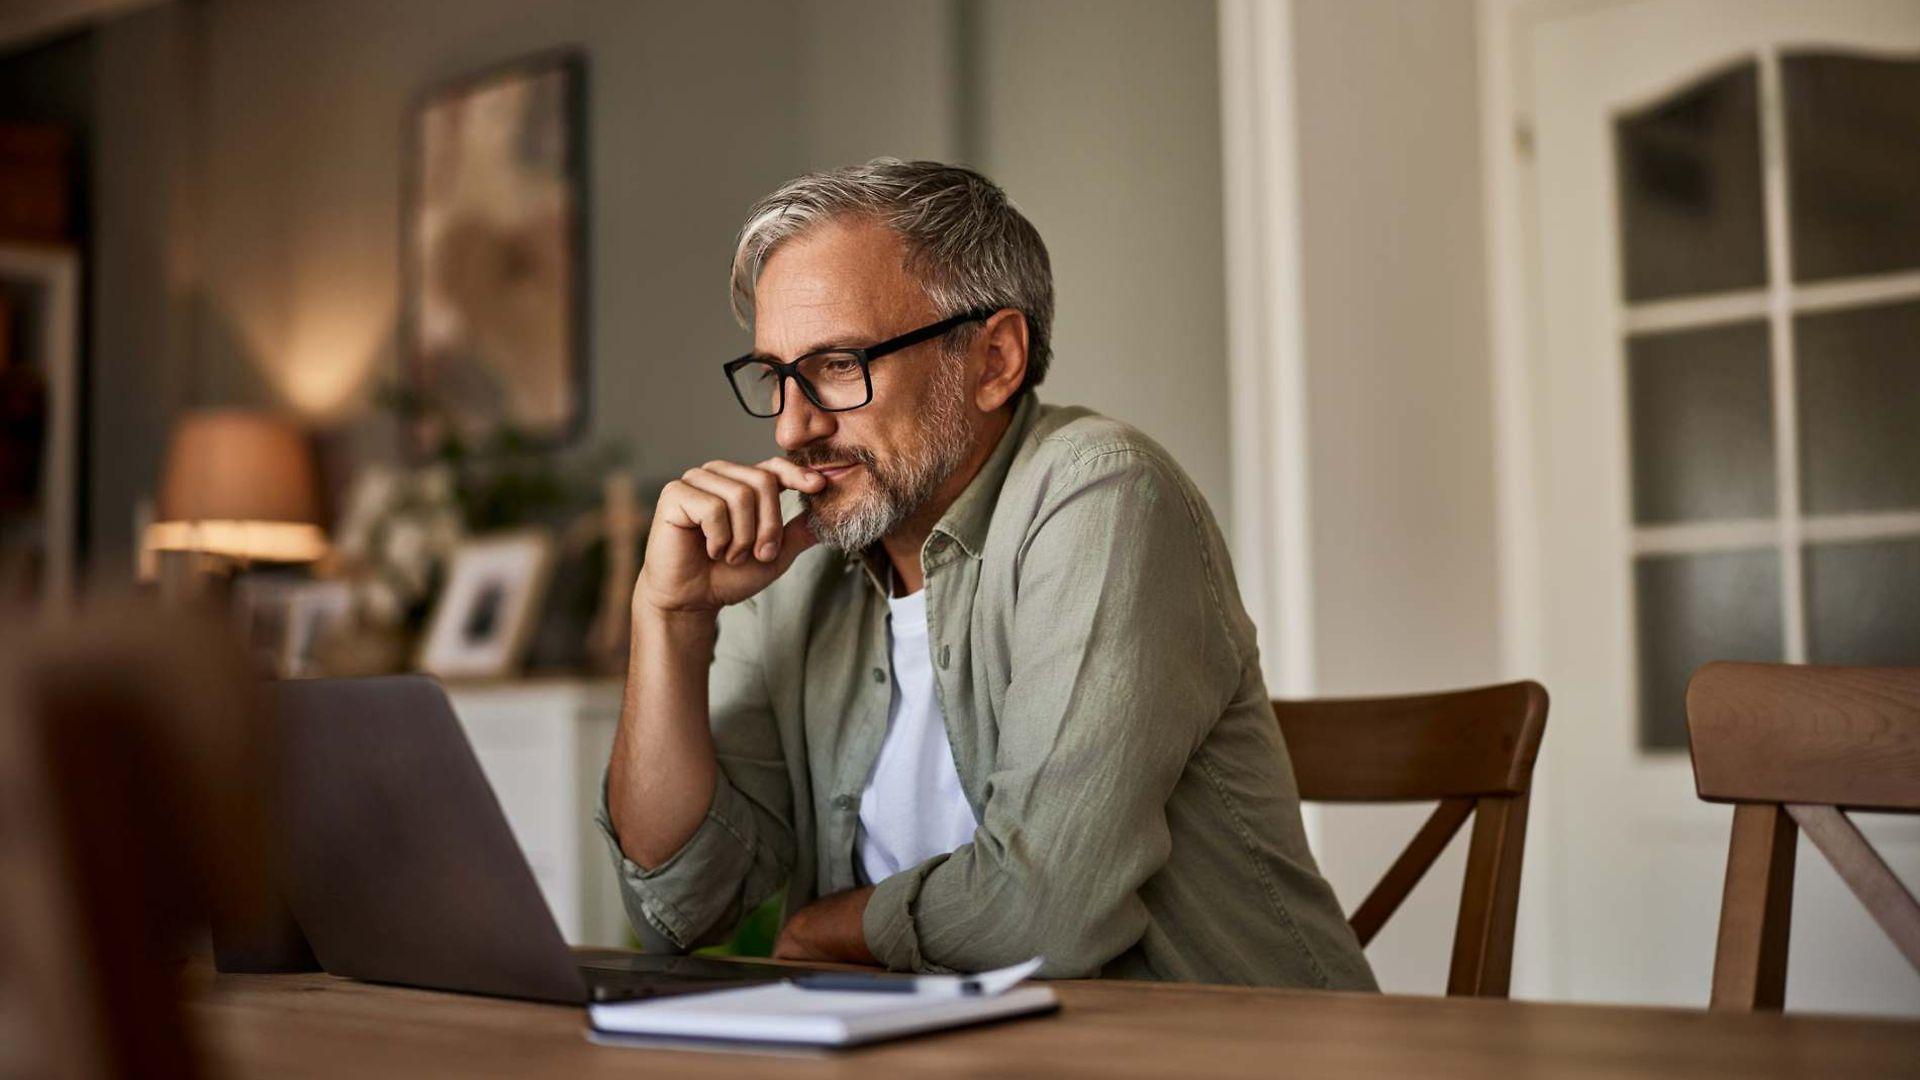 Bild: Mann mit Brille liest etwas am Laptop